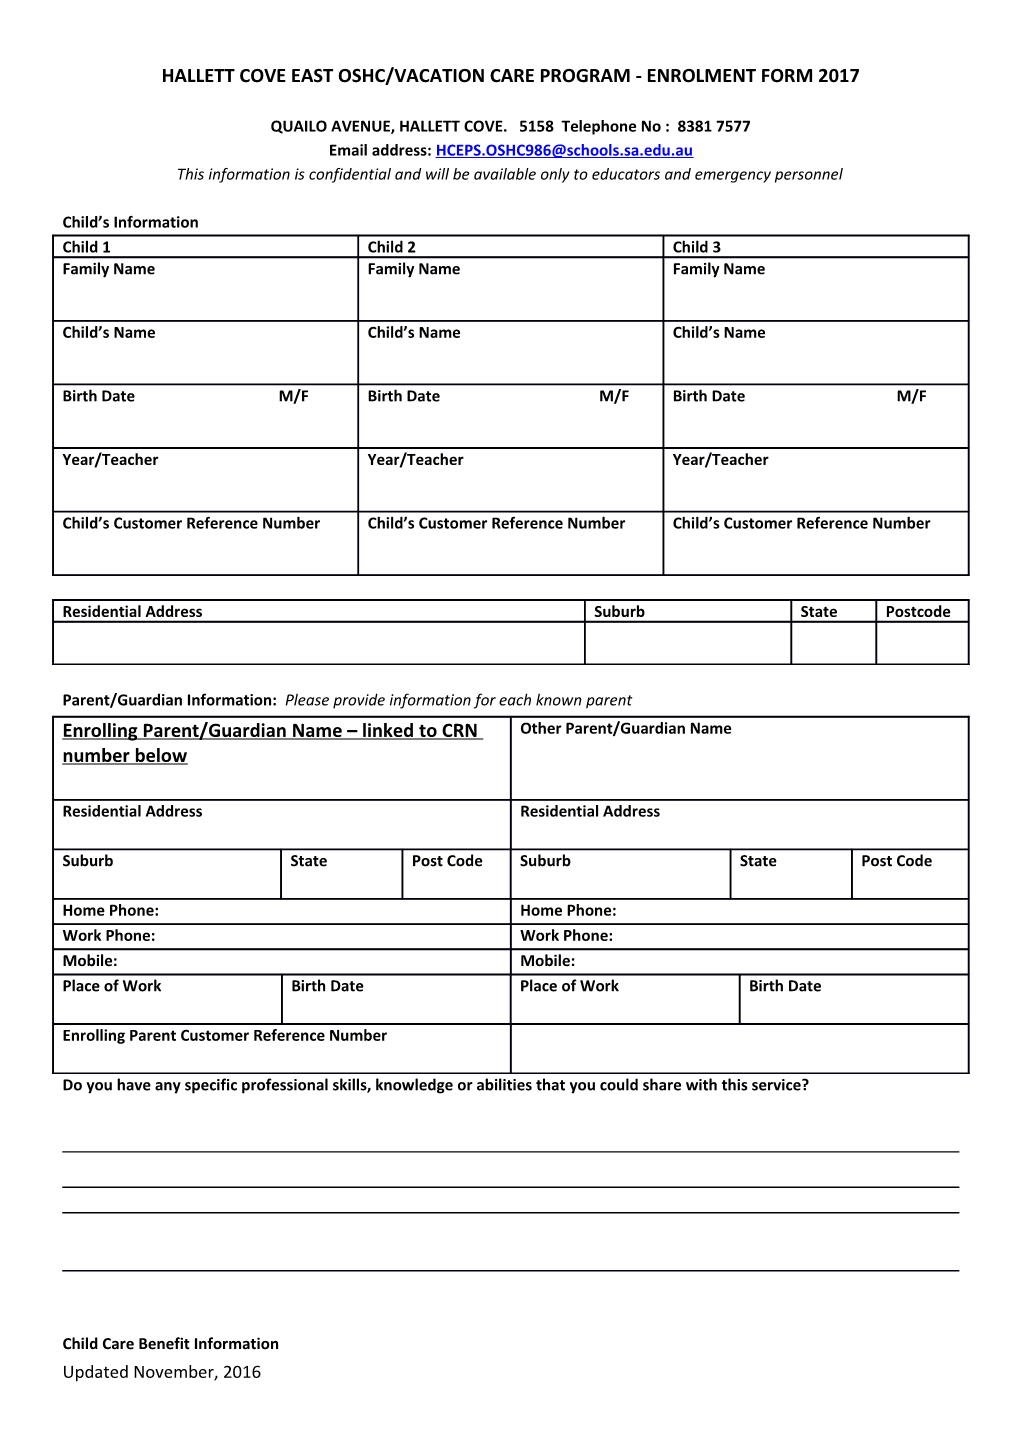 SHEIDOW PARK SCHOOL OSHC Enrolment Form 2013